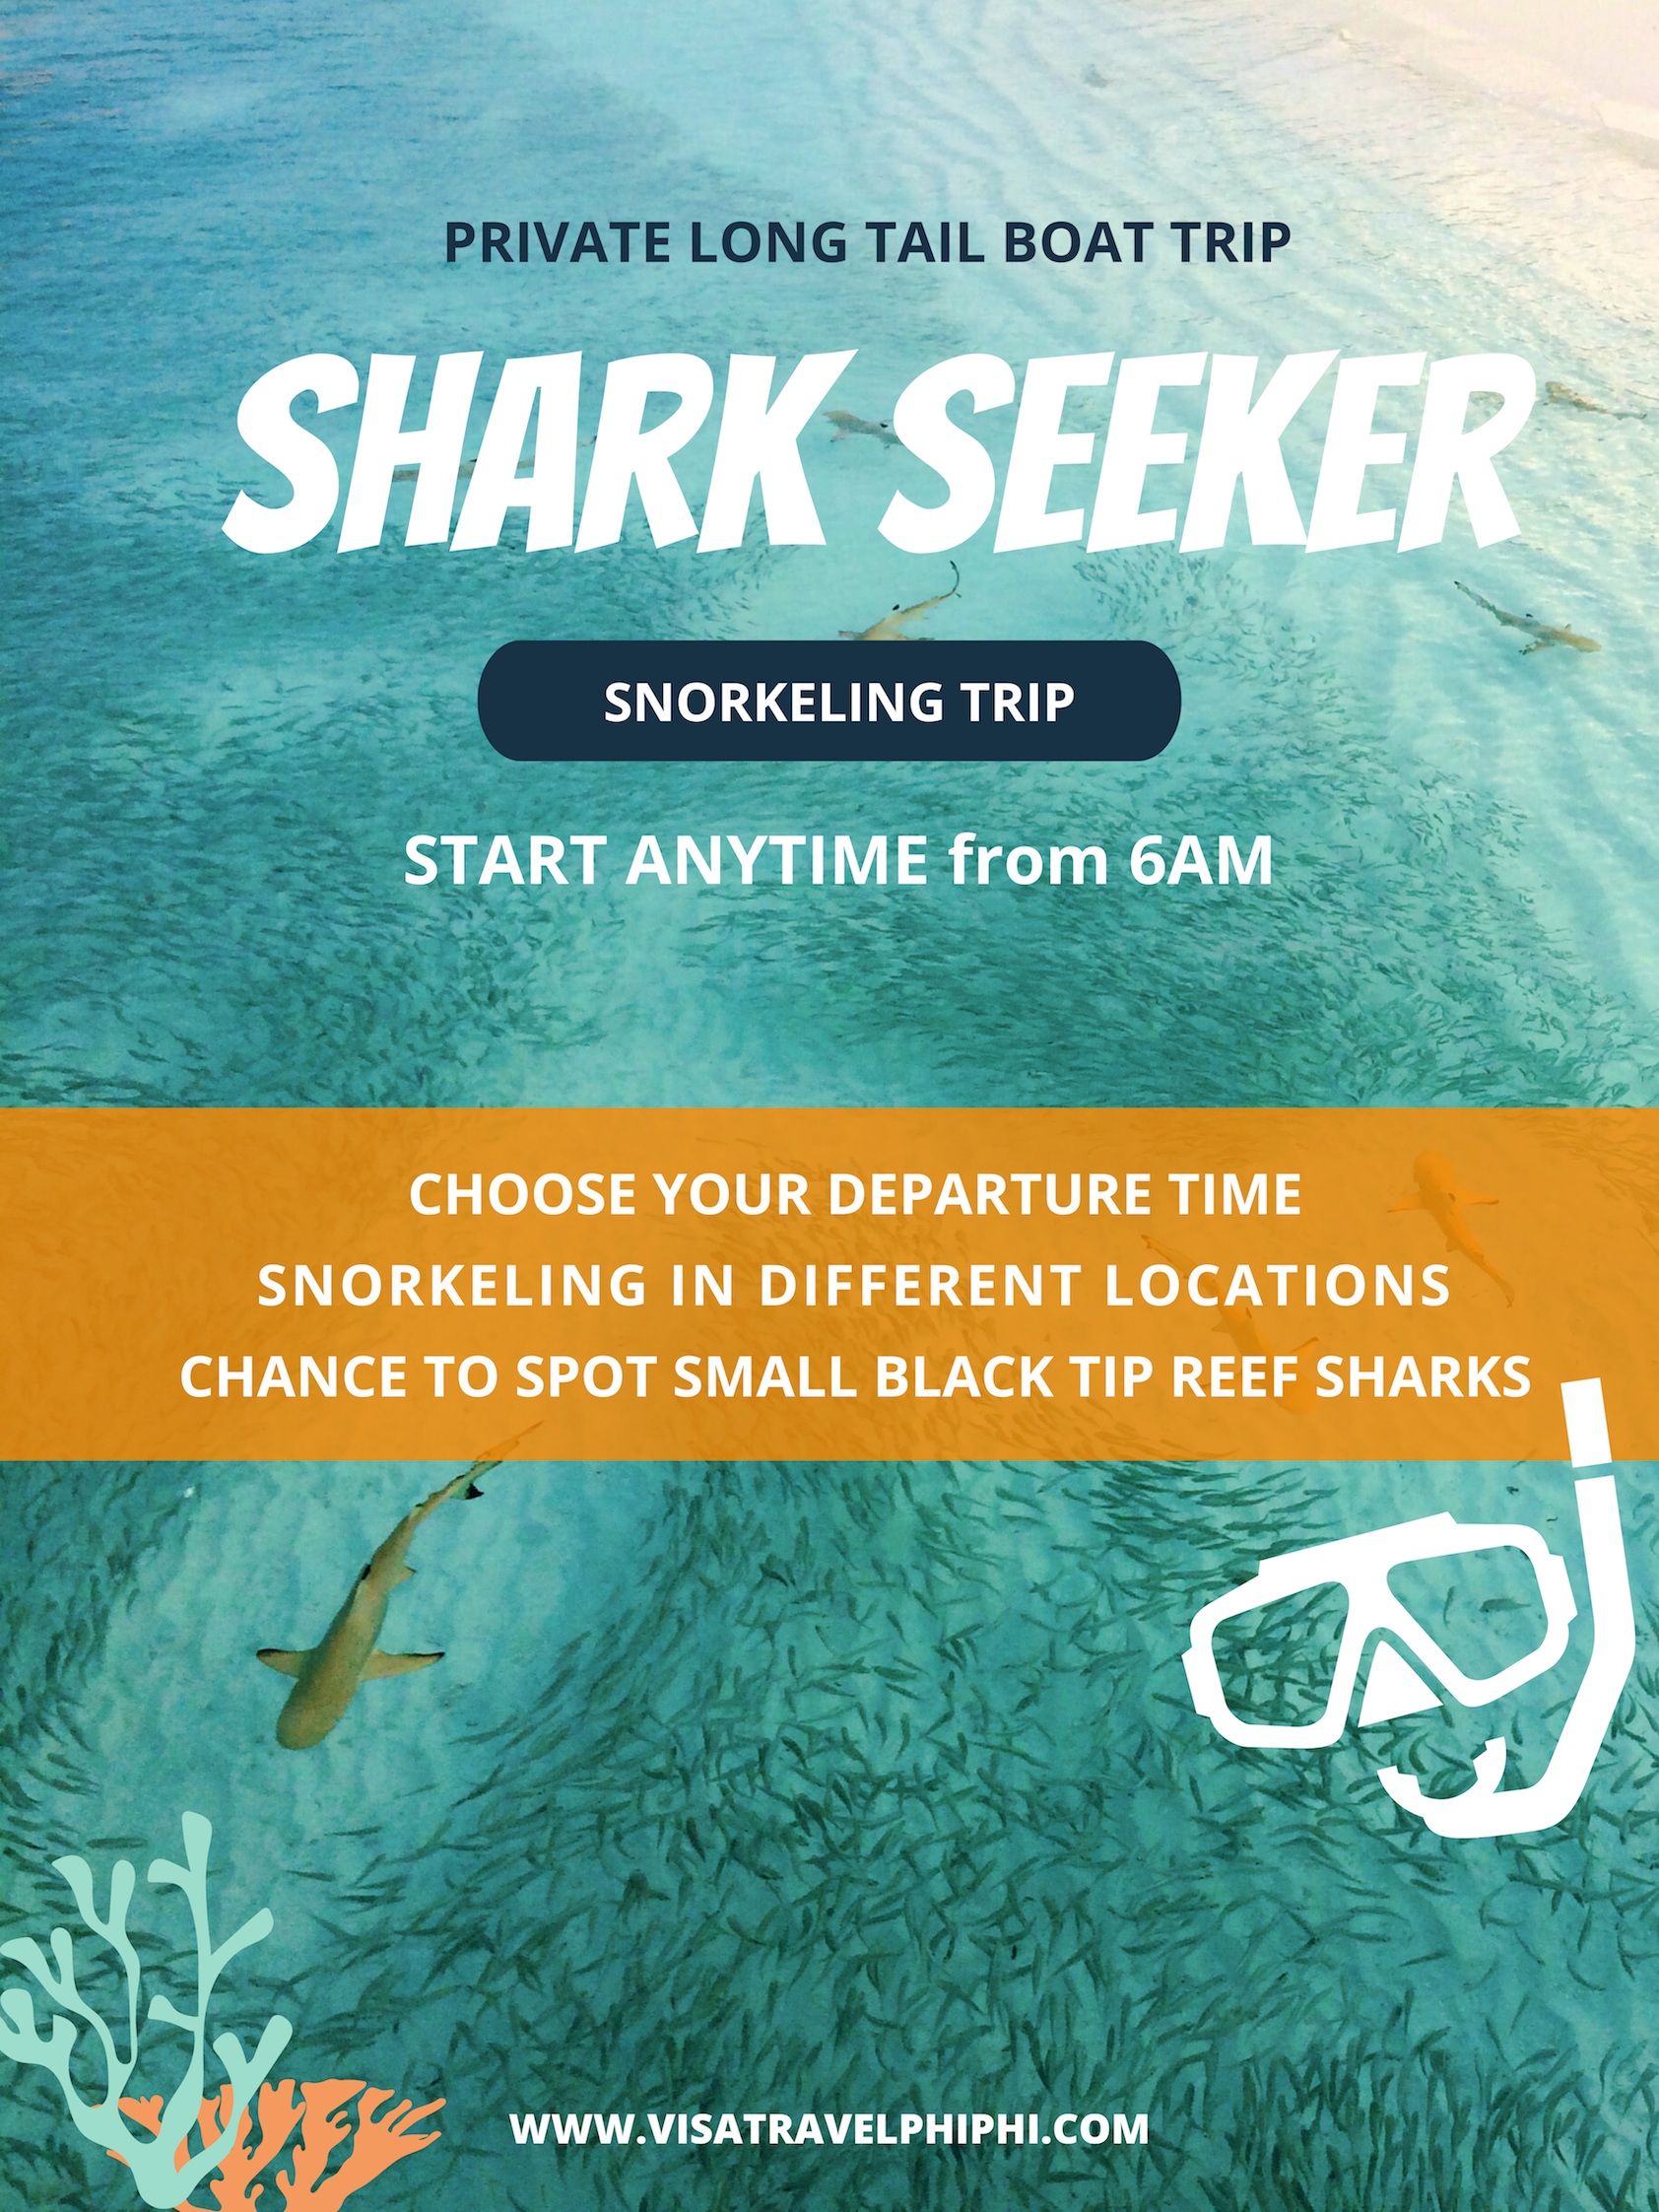 SHARK-seeker-snorkeling-trip-koh-phi-phi-islands